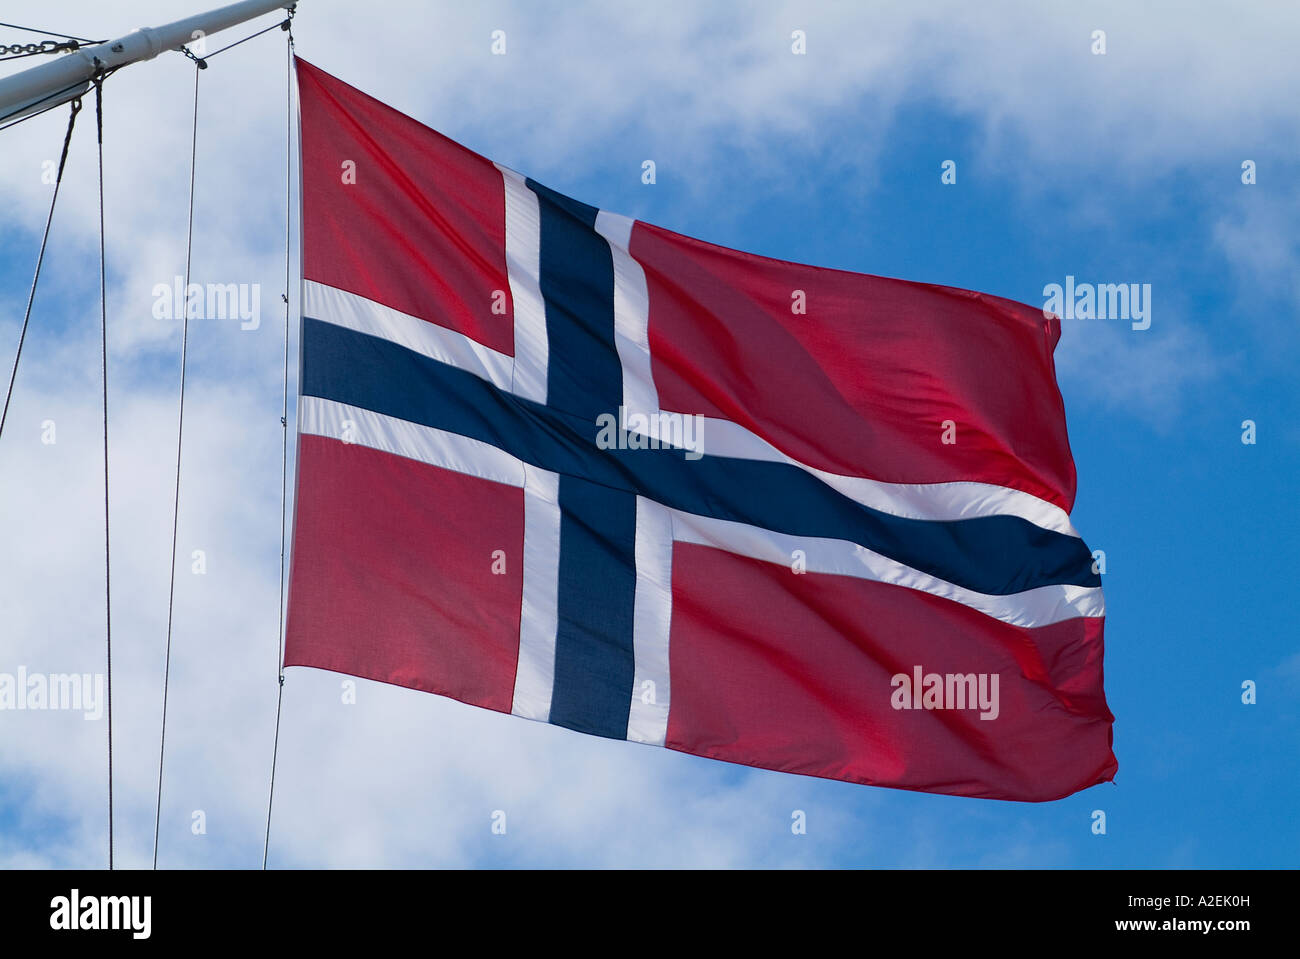 dh norwegische Flagge FLAGGE NORWEGEN Rot Hintergrund mit weißem und blauem Kreuz Fähnchen an Bord Segelschiff fliegen Nation Farben Schiffe Flaggen Stockfoto